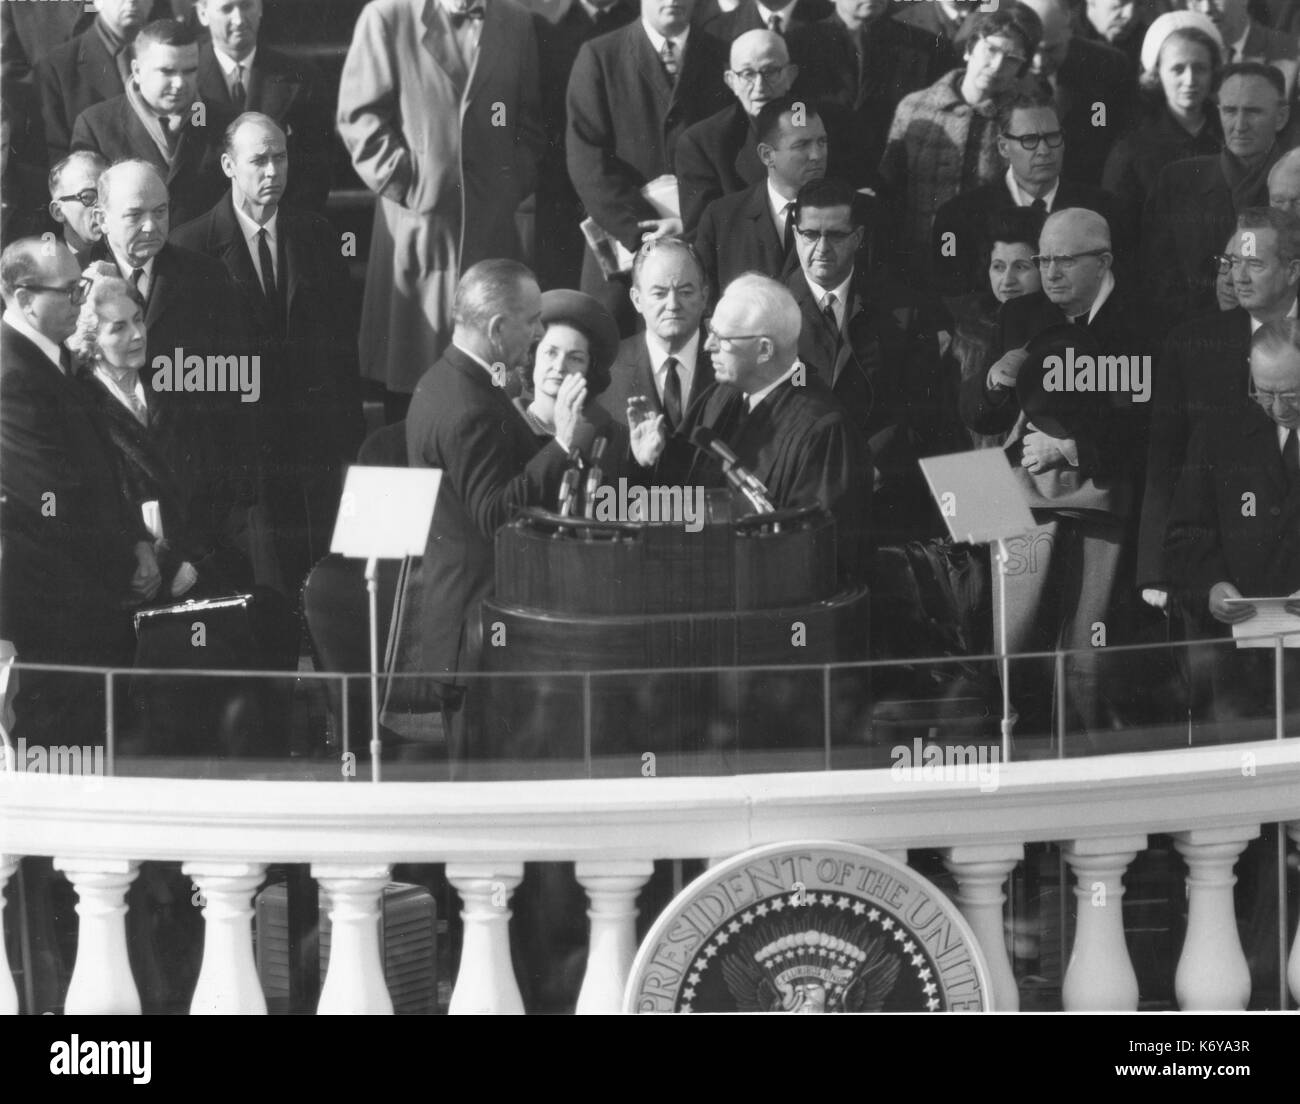 Lyndon Baines Johnson prende il giuramento come Presidente degli Stati Uniti dal Chief Justice Earl Warren il 20 gennaio 1965, presso il Capitol. In piedi appena oltre themn sono la signora Johnson e Vice Presidente Hubert H. Humphrey. Washington, DC. 1965. Foto Stock